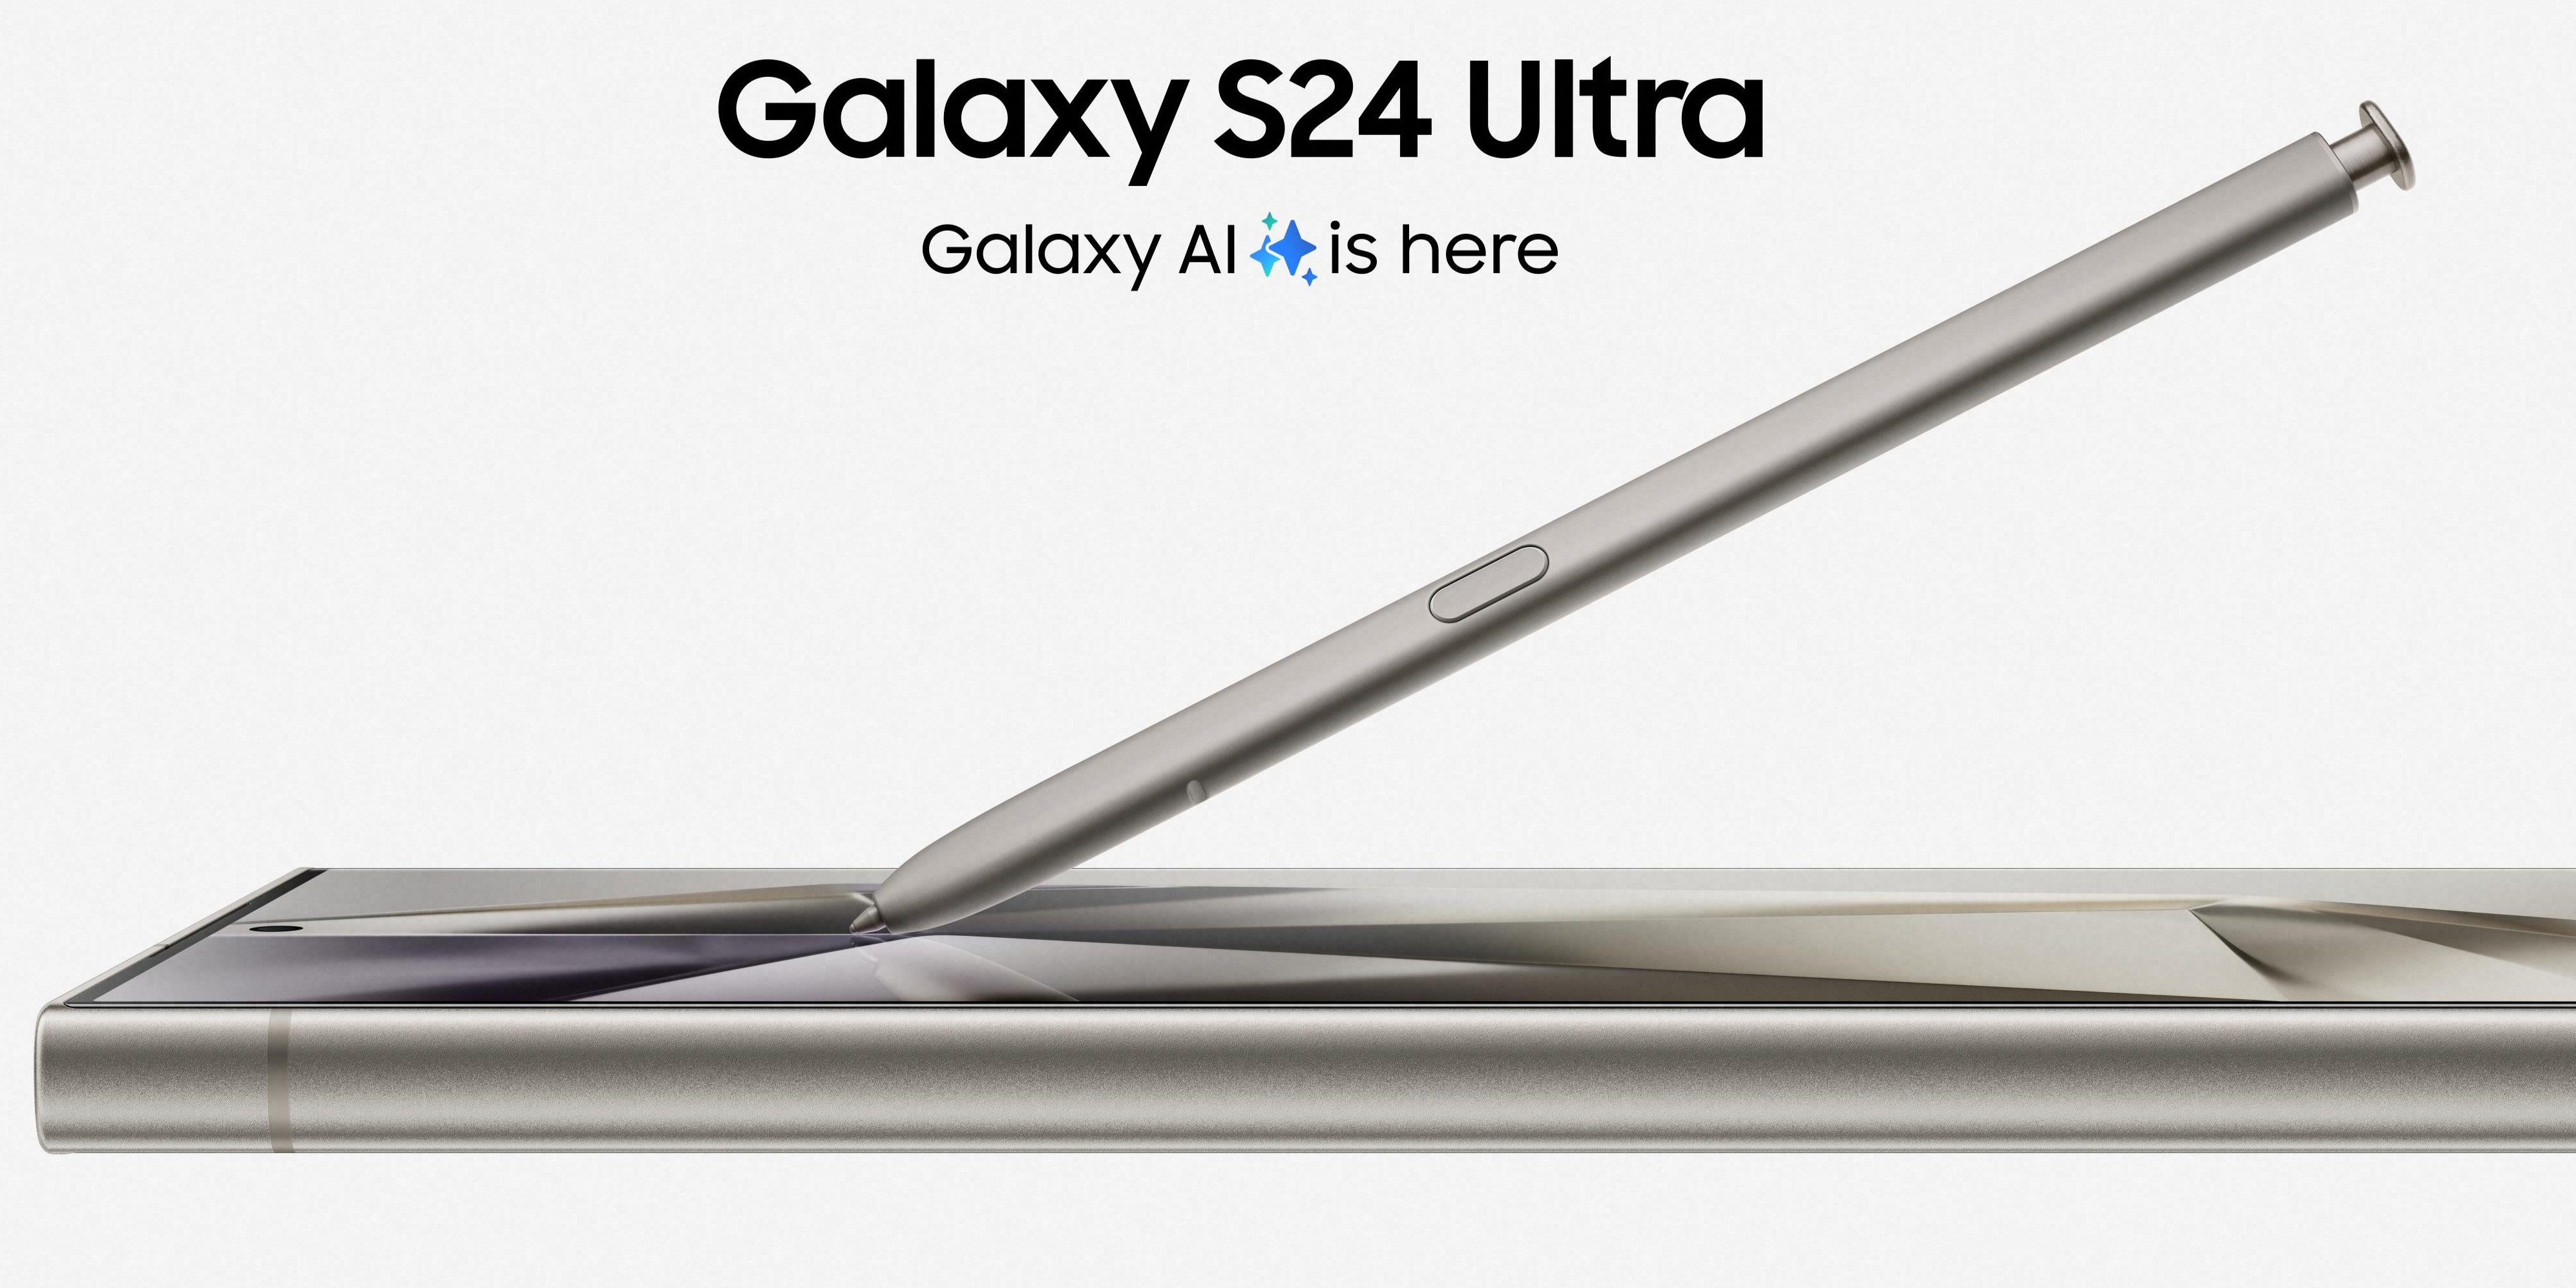 Samsung S24 Ultra vorgestellt - wurde es verschlimmbessert?